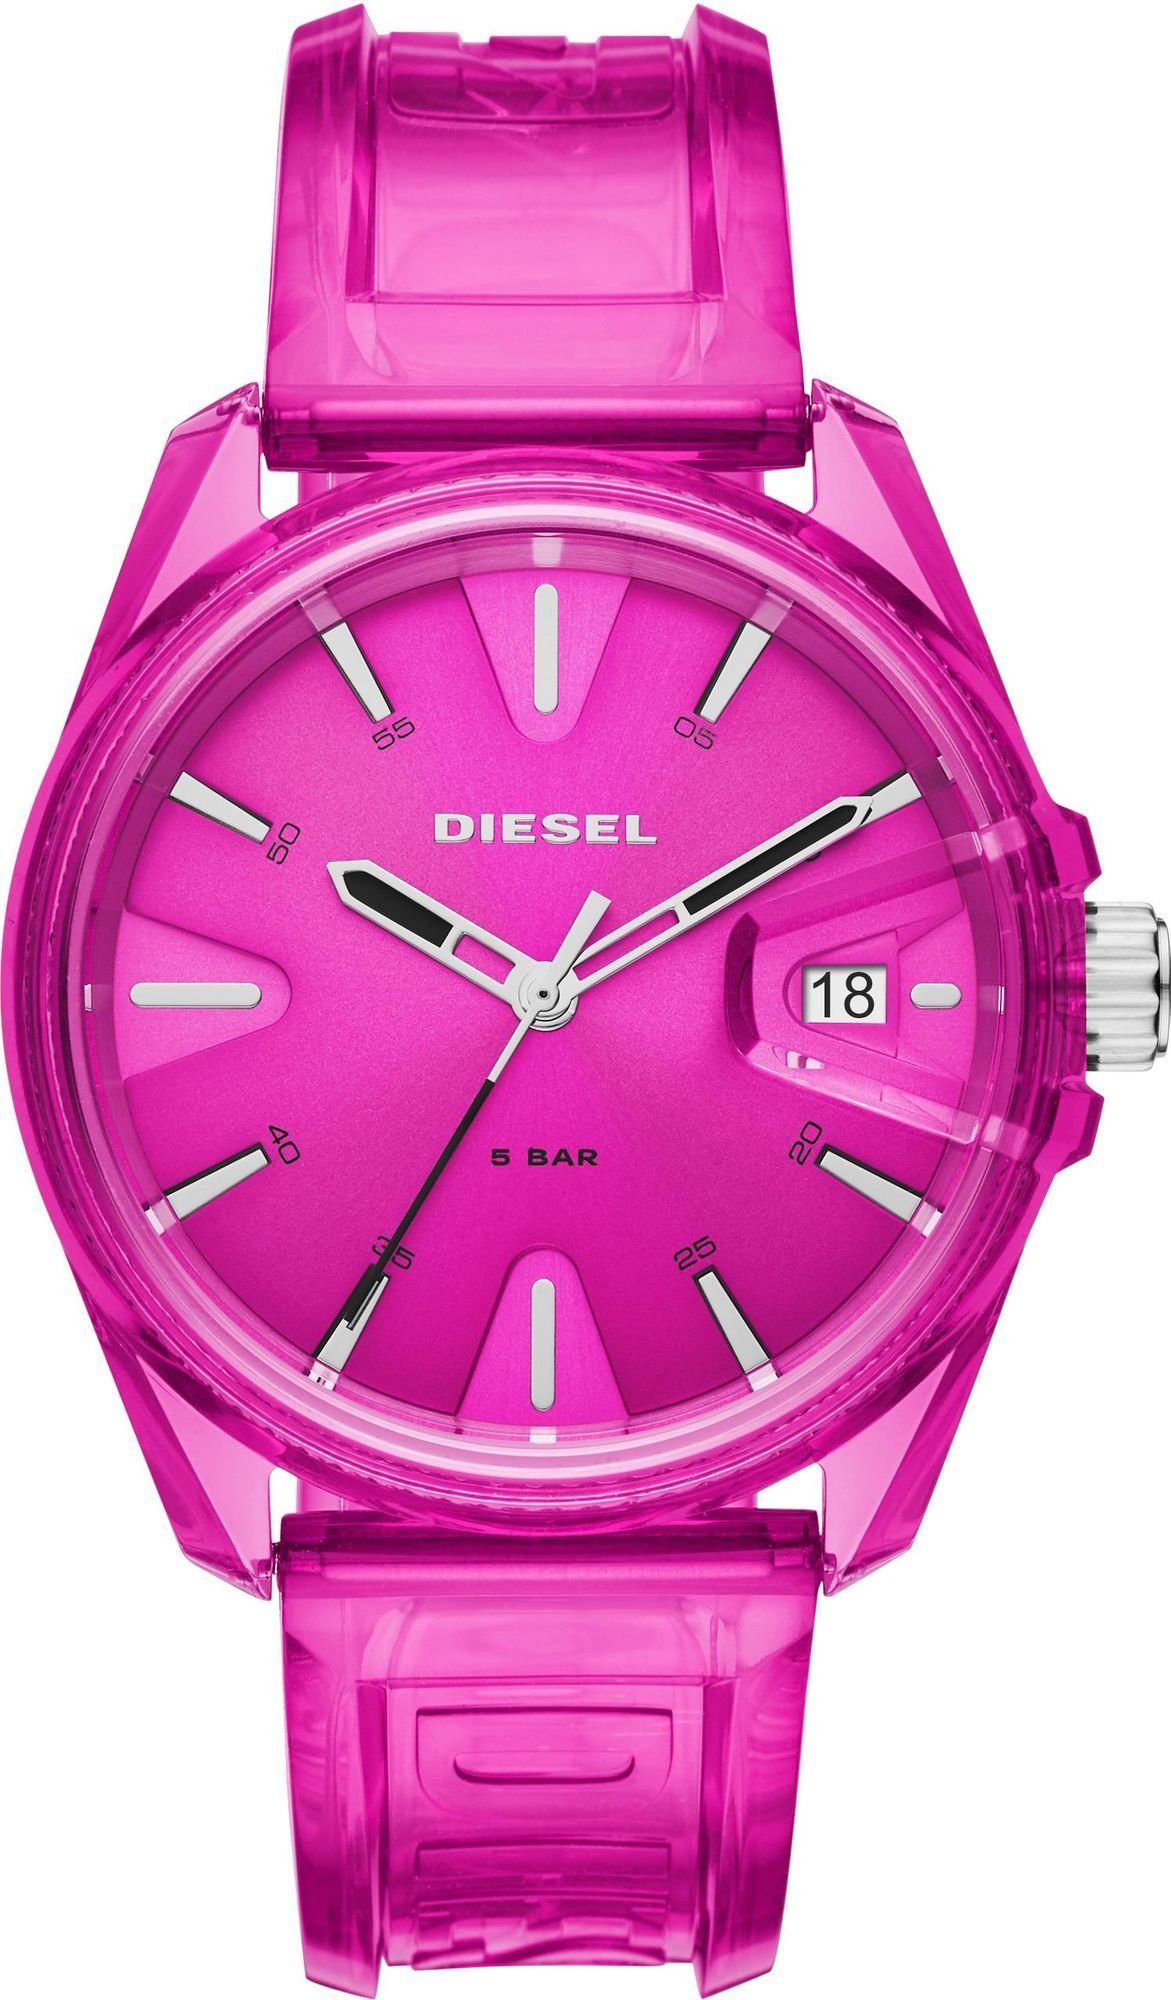 DZ1929 Diesel DIESEL Mechanische Uhr Armbanduhr MS9